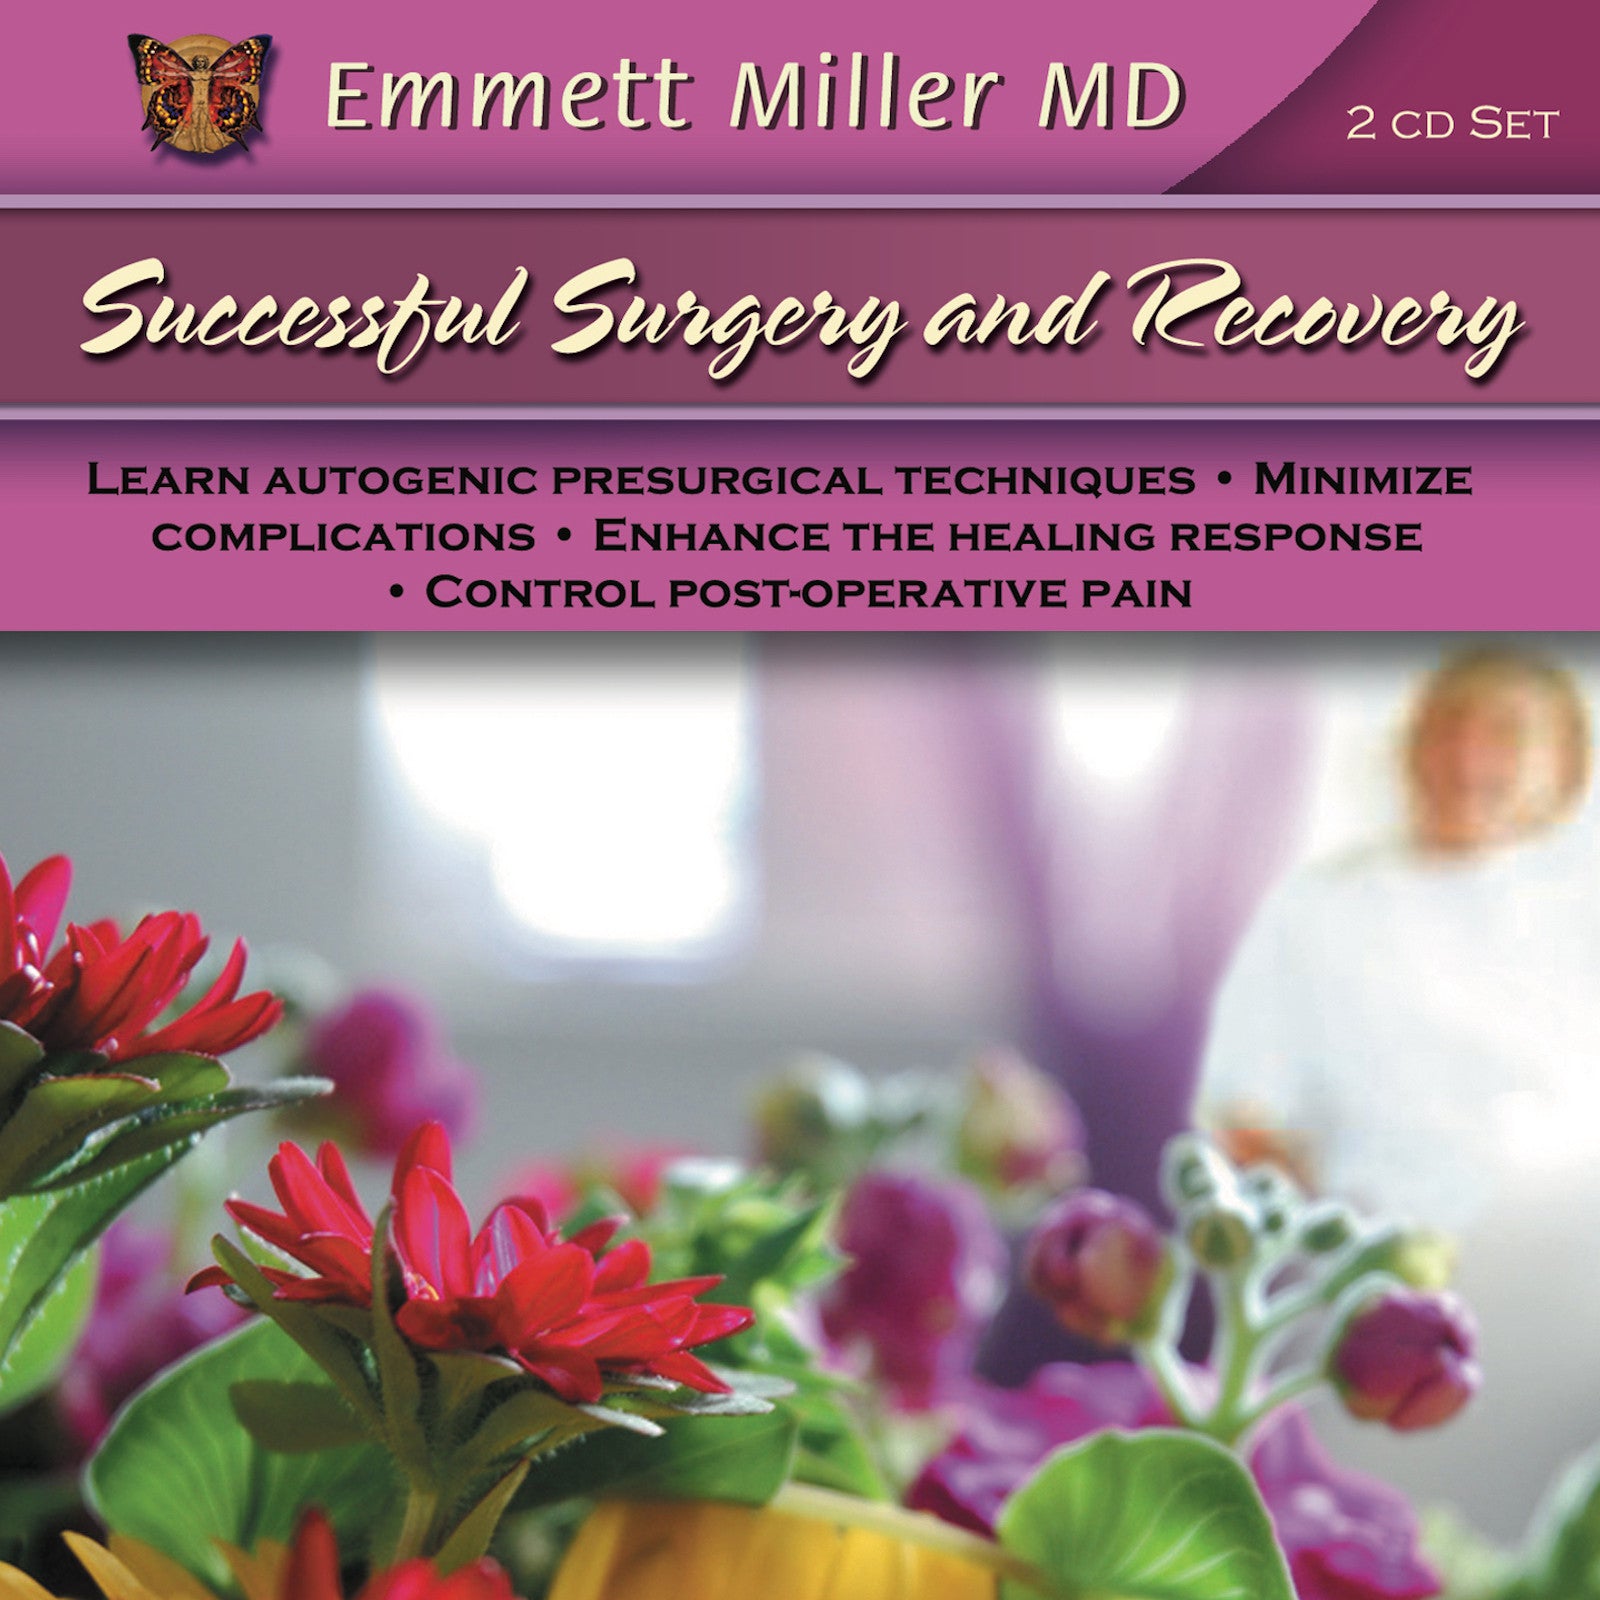 Successful Surgery and Recovery with Dr. Emmett Miller Audio Program Dr. Emmett Miller - BetterListen!